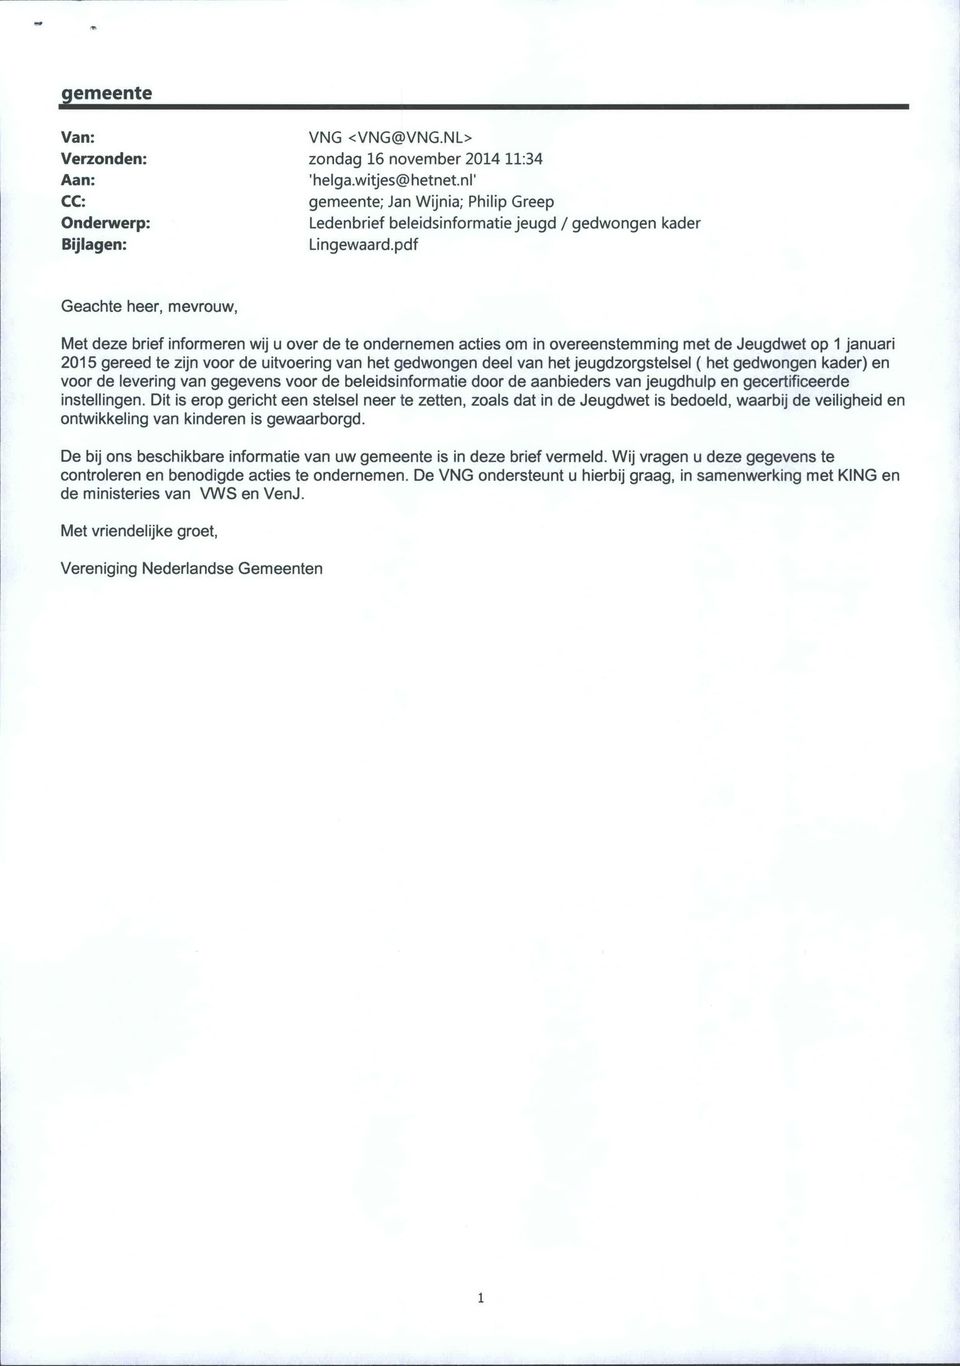 pdf Geachte heer, mevrouw, Met deze brief informeren wij u over de te ondernemen acties om in overeenstemming met de Jeugdwet op 1 januari 2015 gereed te zijn voor de uitvoering van het gedwongen